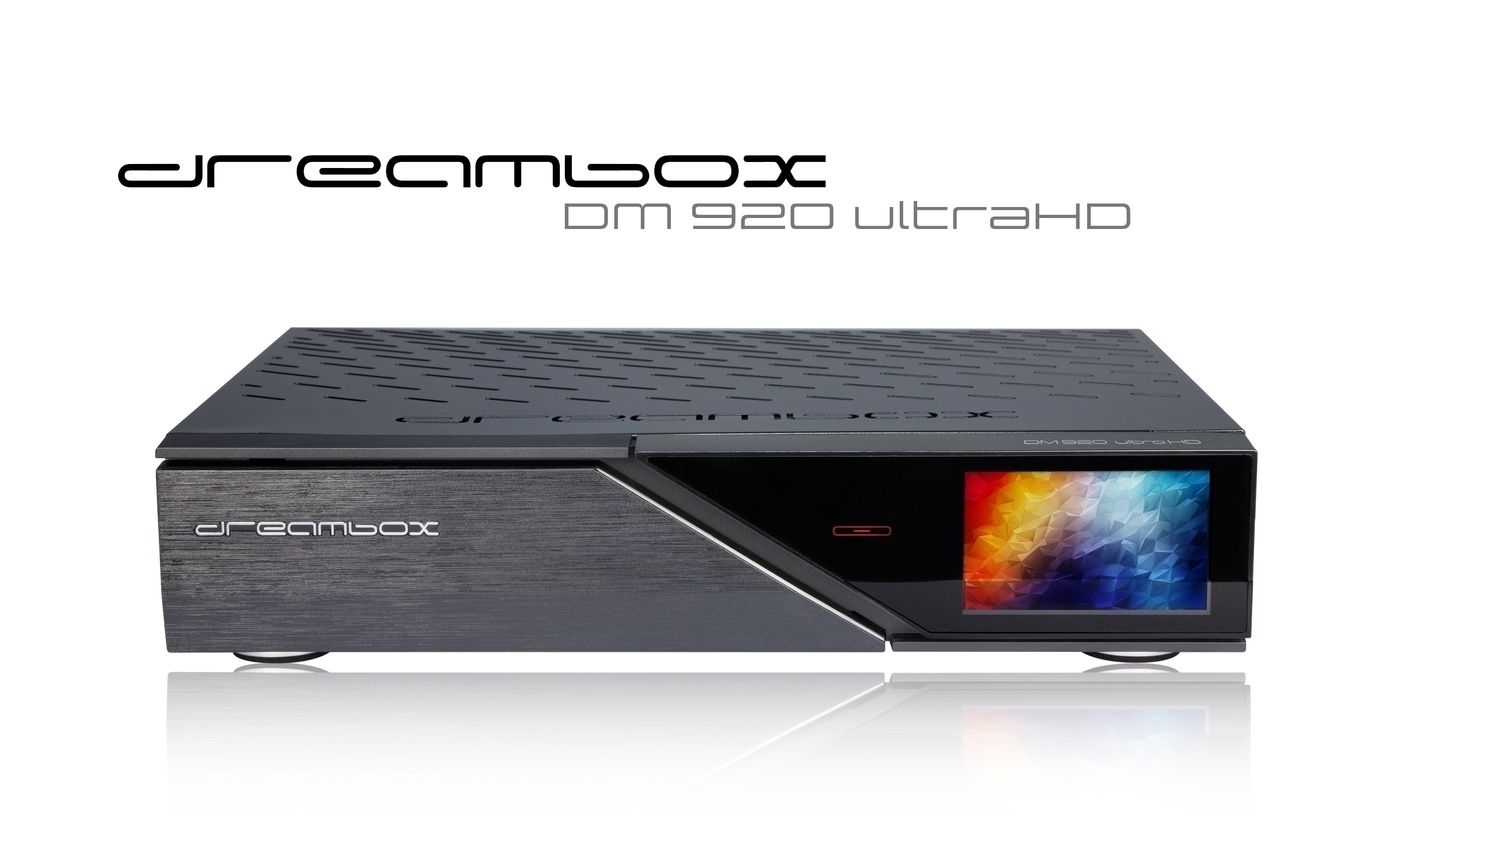 Dreambox DM920 UHD 4K 1x DVB-S2 FBC / 1x DVB-C/T2 Dual Tuner E2 Linux PVR Receiver